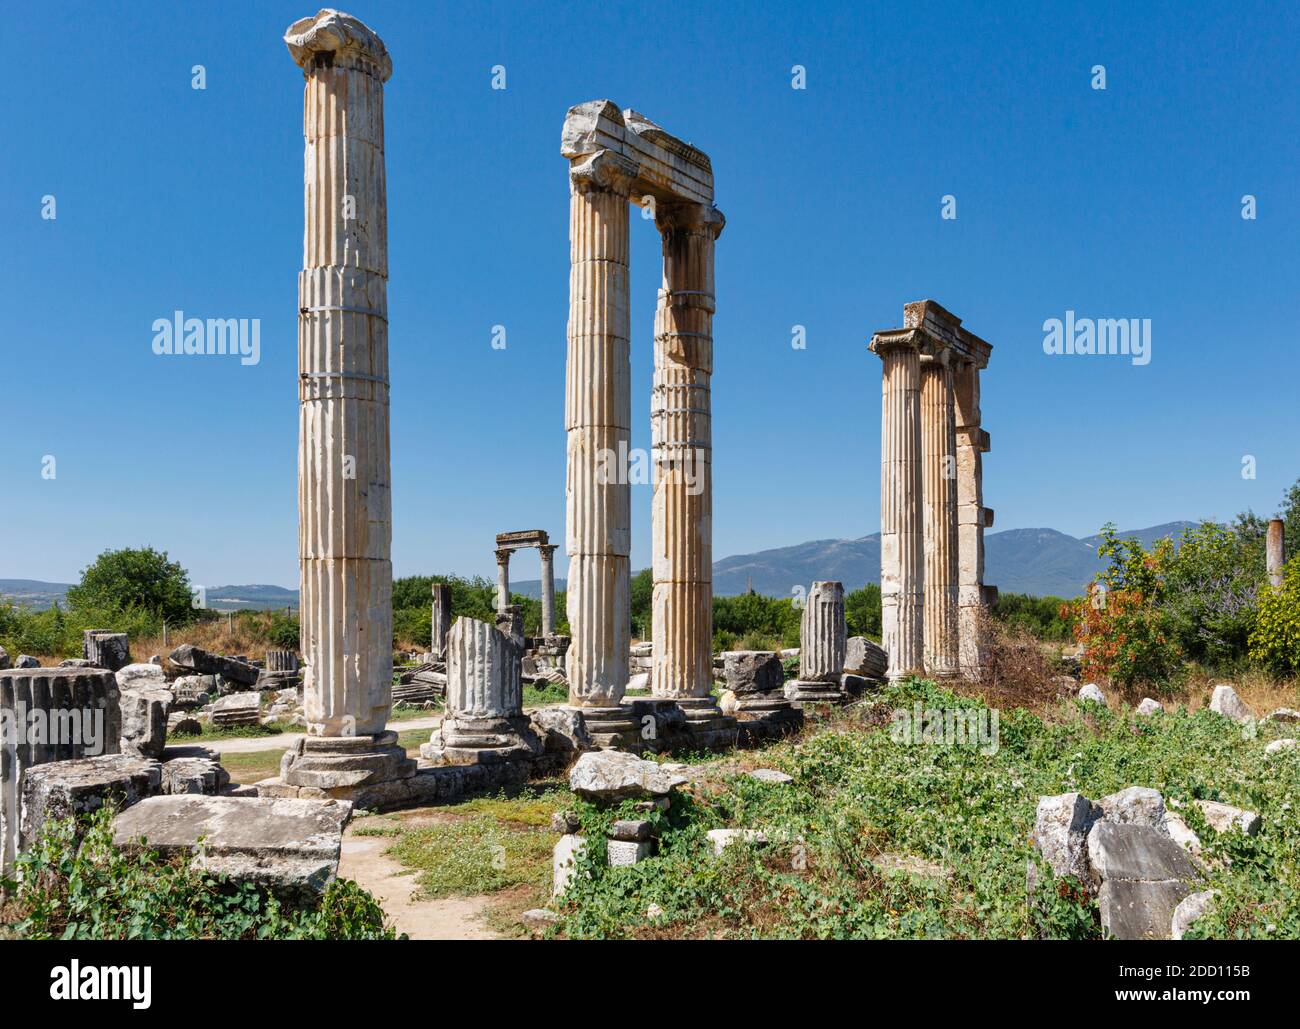 Ruines d'Aphrodisias, province d'Aydin, Turquie. Ruines du Temple d'Aphrodite. Aphrodisias, site classé au patrimoine mondial de l'UNESCO, a été consacré Banque D'Images